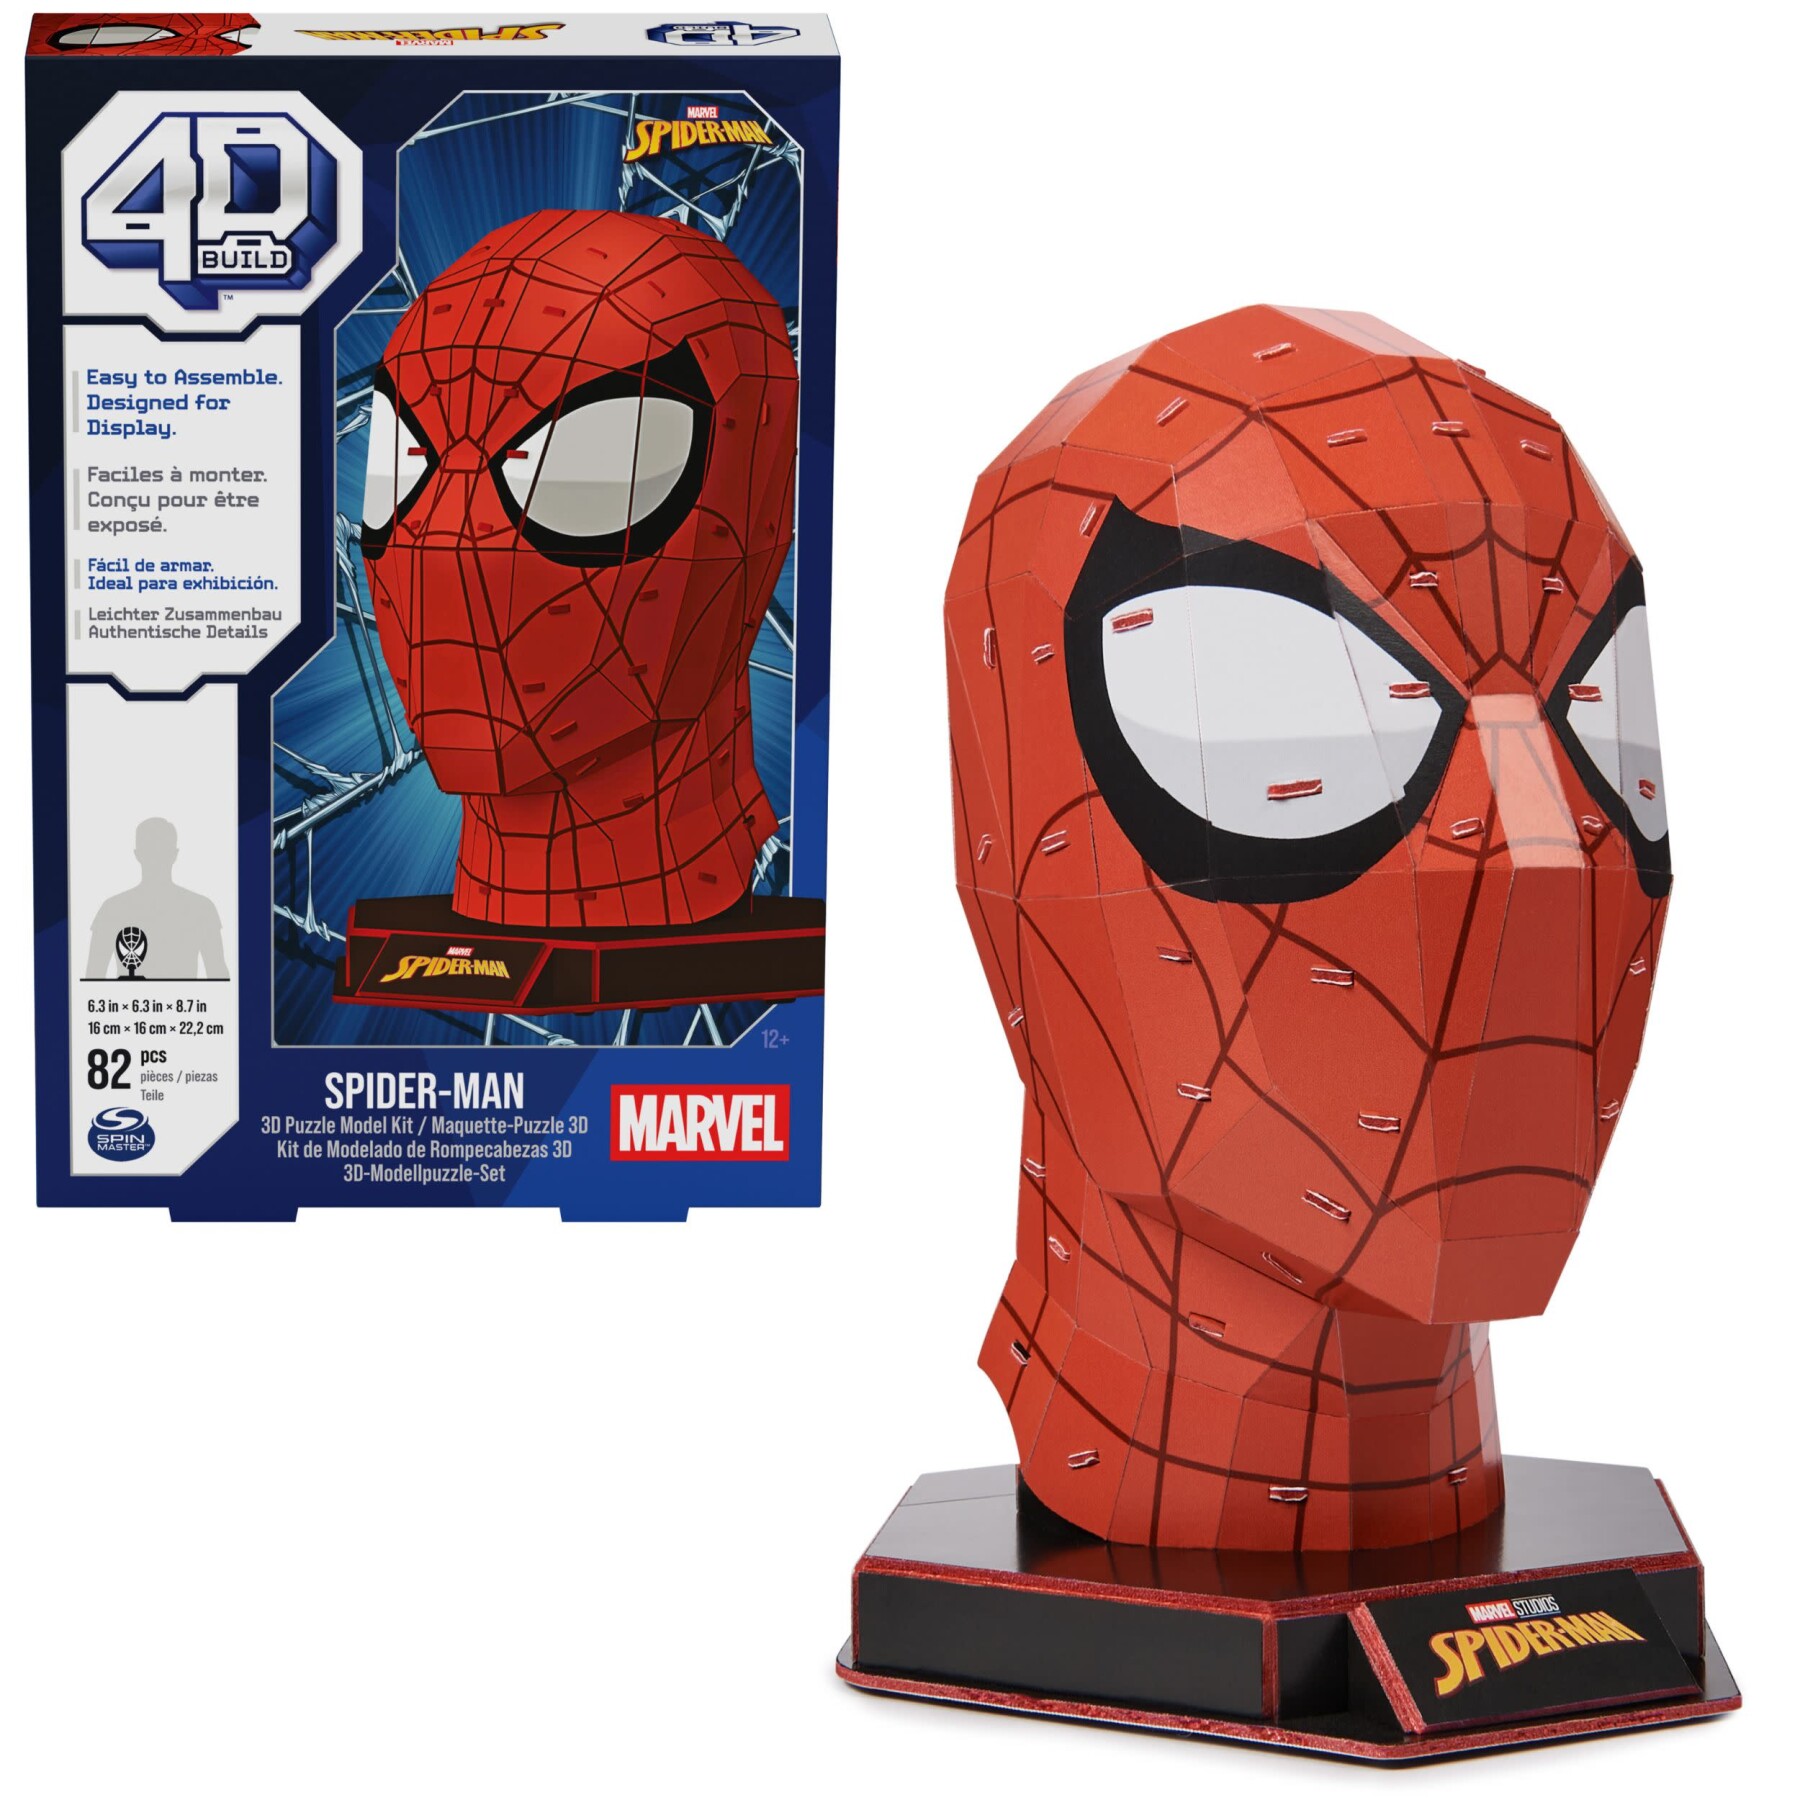 4d build, kit di modellismo per puzzle 3d marvel spider-man da 82 pezzi con supporto | decorazione da tavolo di spider-man | giocattoli da costruzione | puzzle 3d per adulti e ragazzi dai 12 anni in su - 